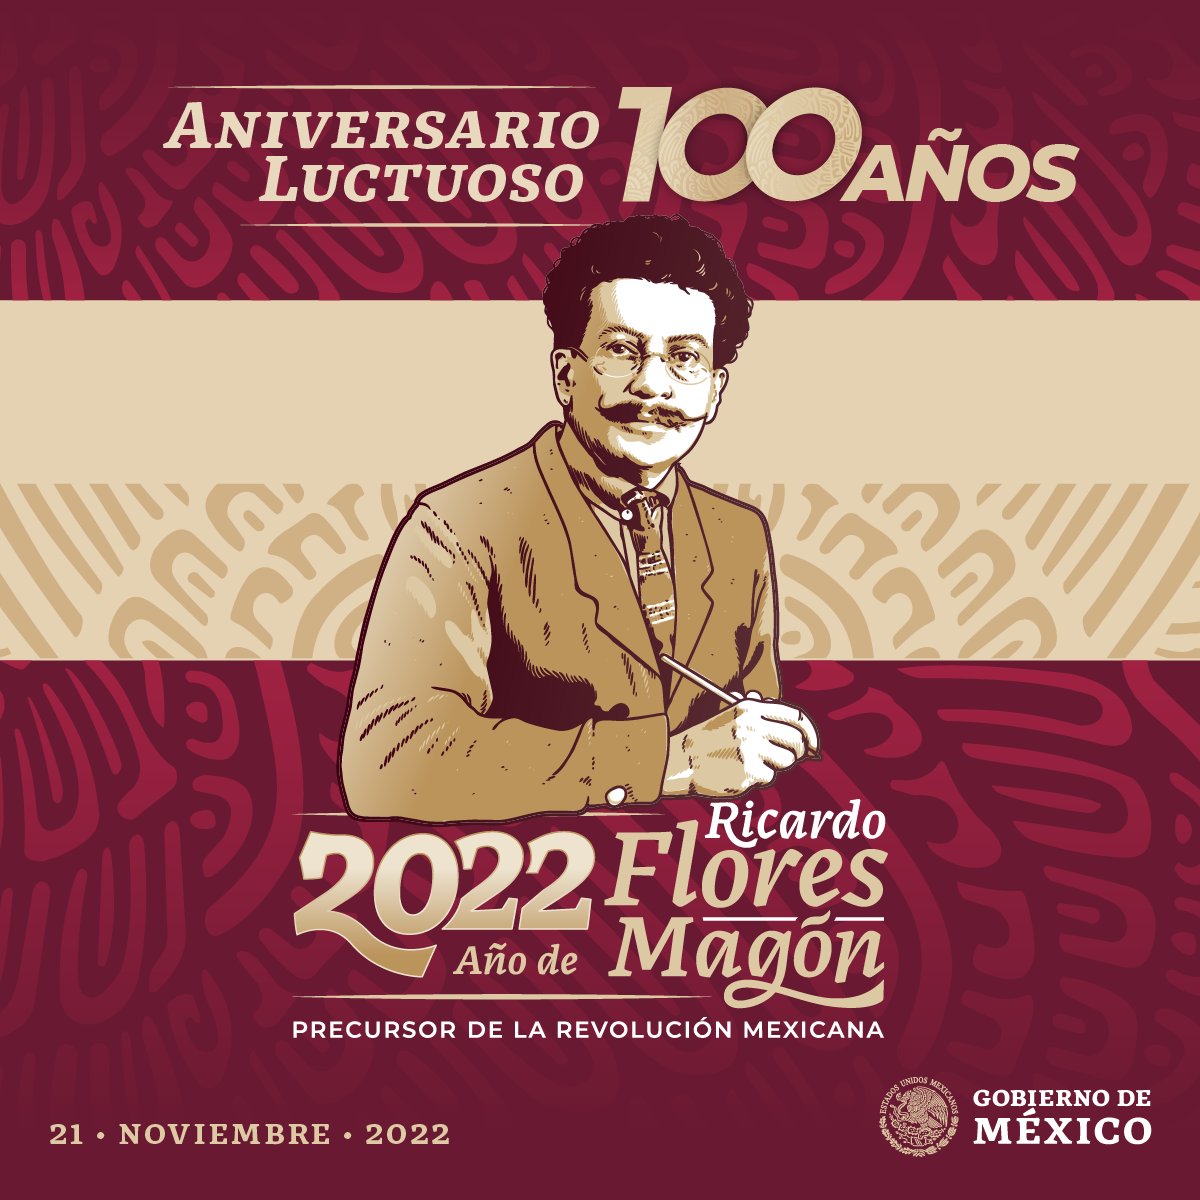 100 años del aniversario luctuoso de 
#RicardoFloresMagón, precursor de la Revolución Mexicana